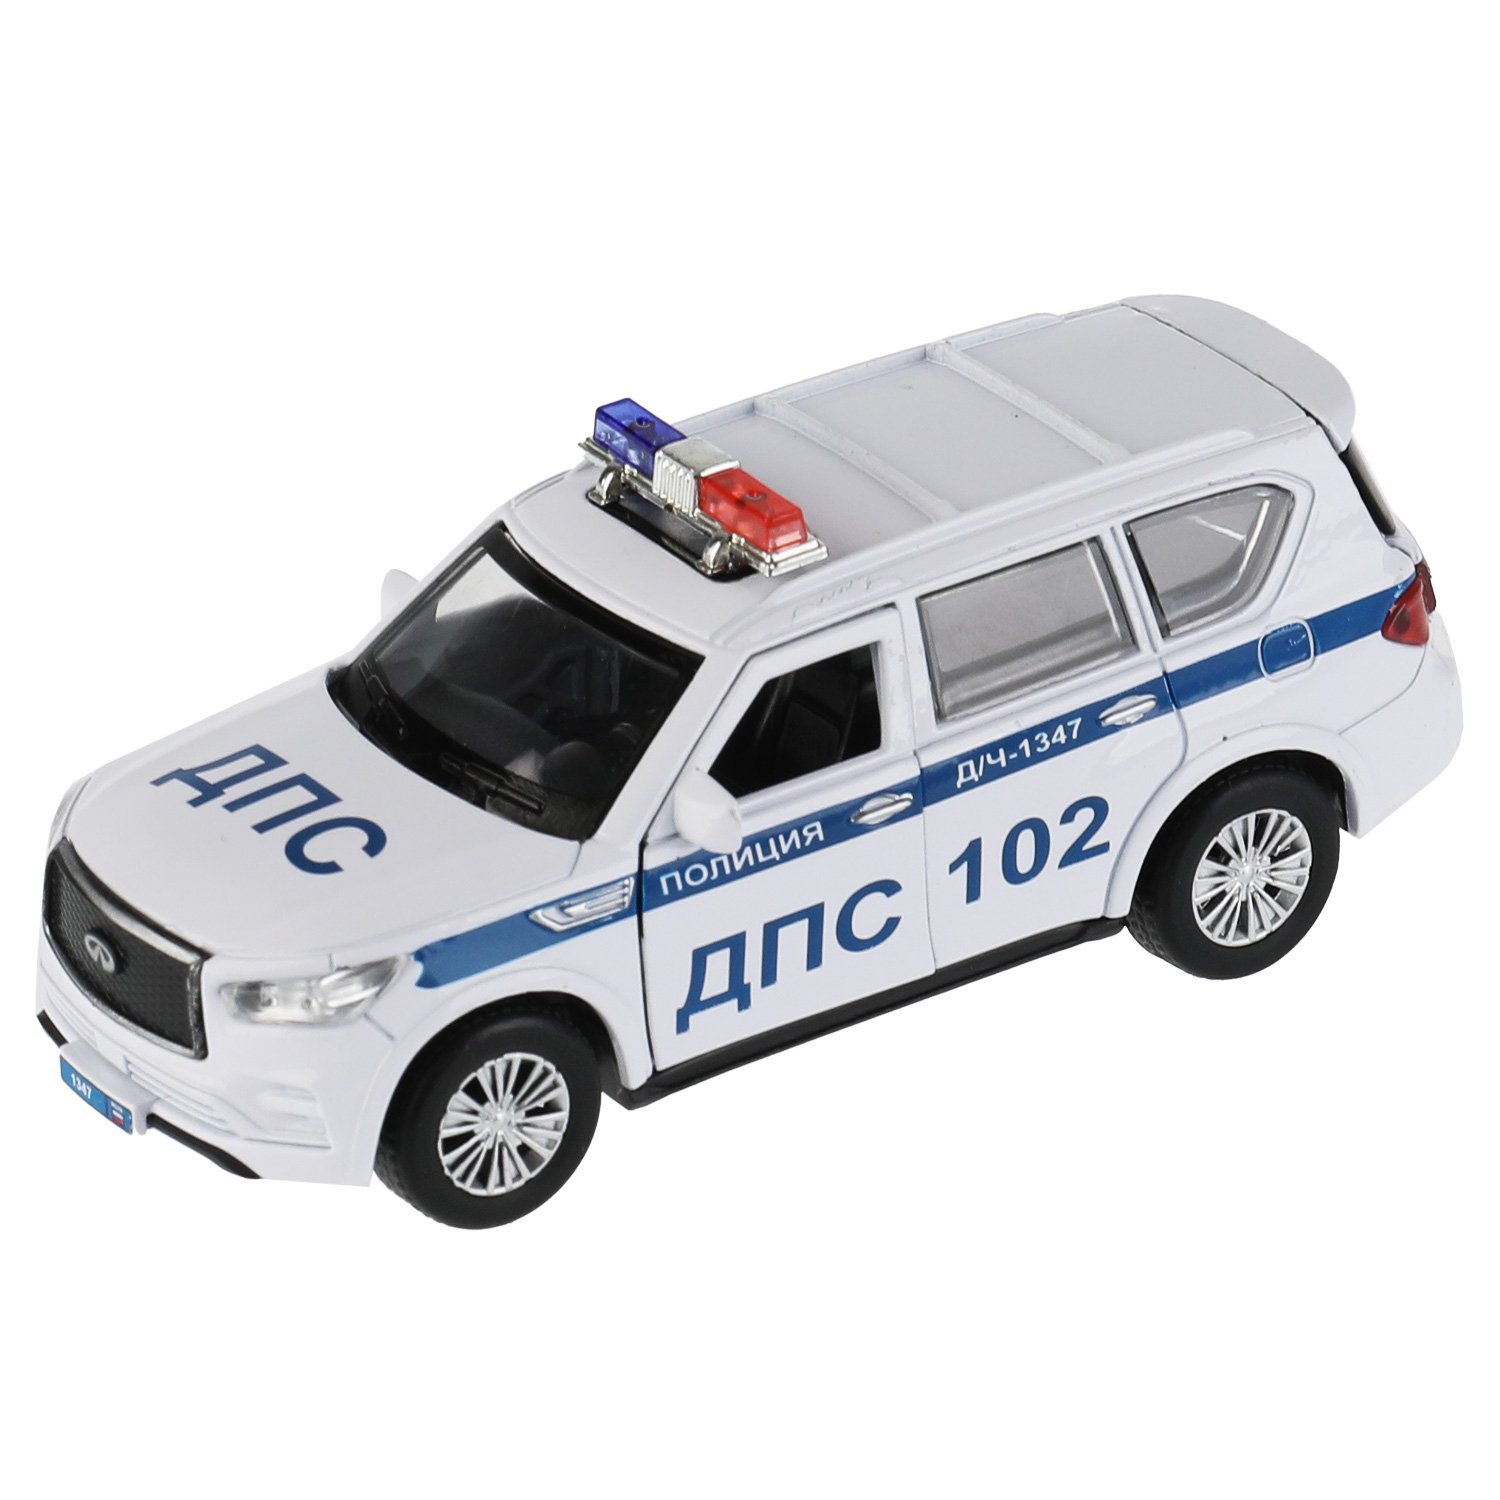 Машина металл Infiniti Qx80 Полиция, 12,5 см, (откр двери, баг, белый) инер, в коробке машина металл infiniti qx80 полиция 12 5 см откр двери баг белый инер в коробке